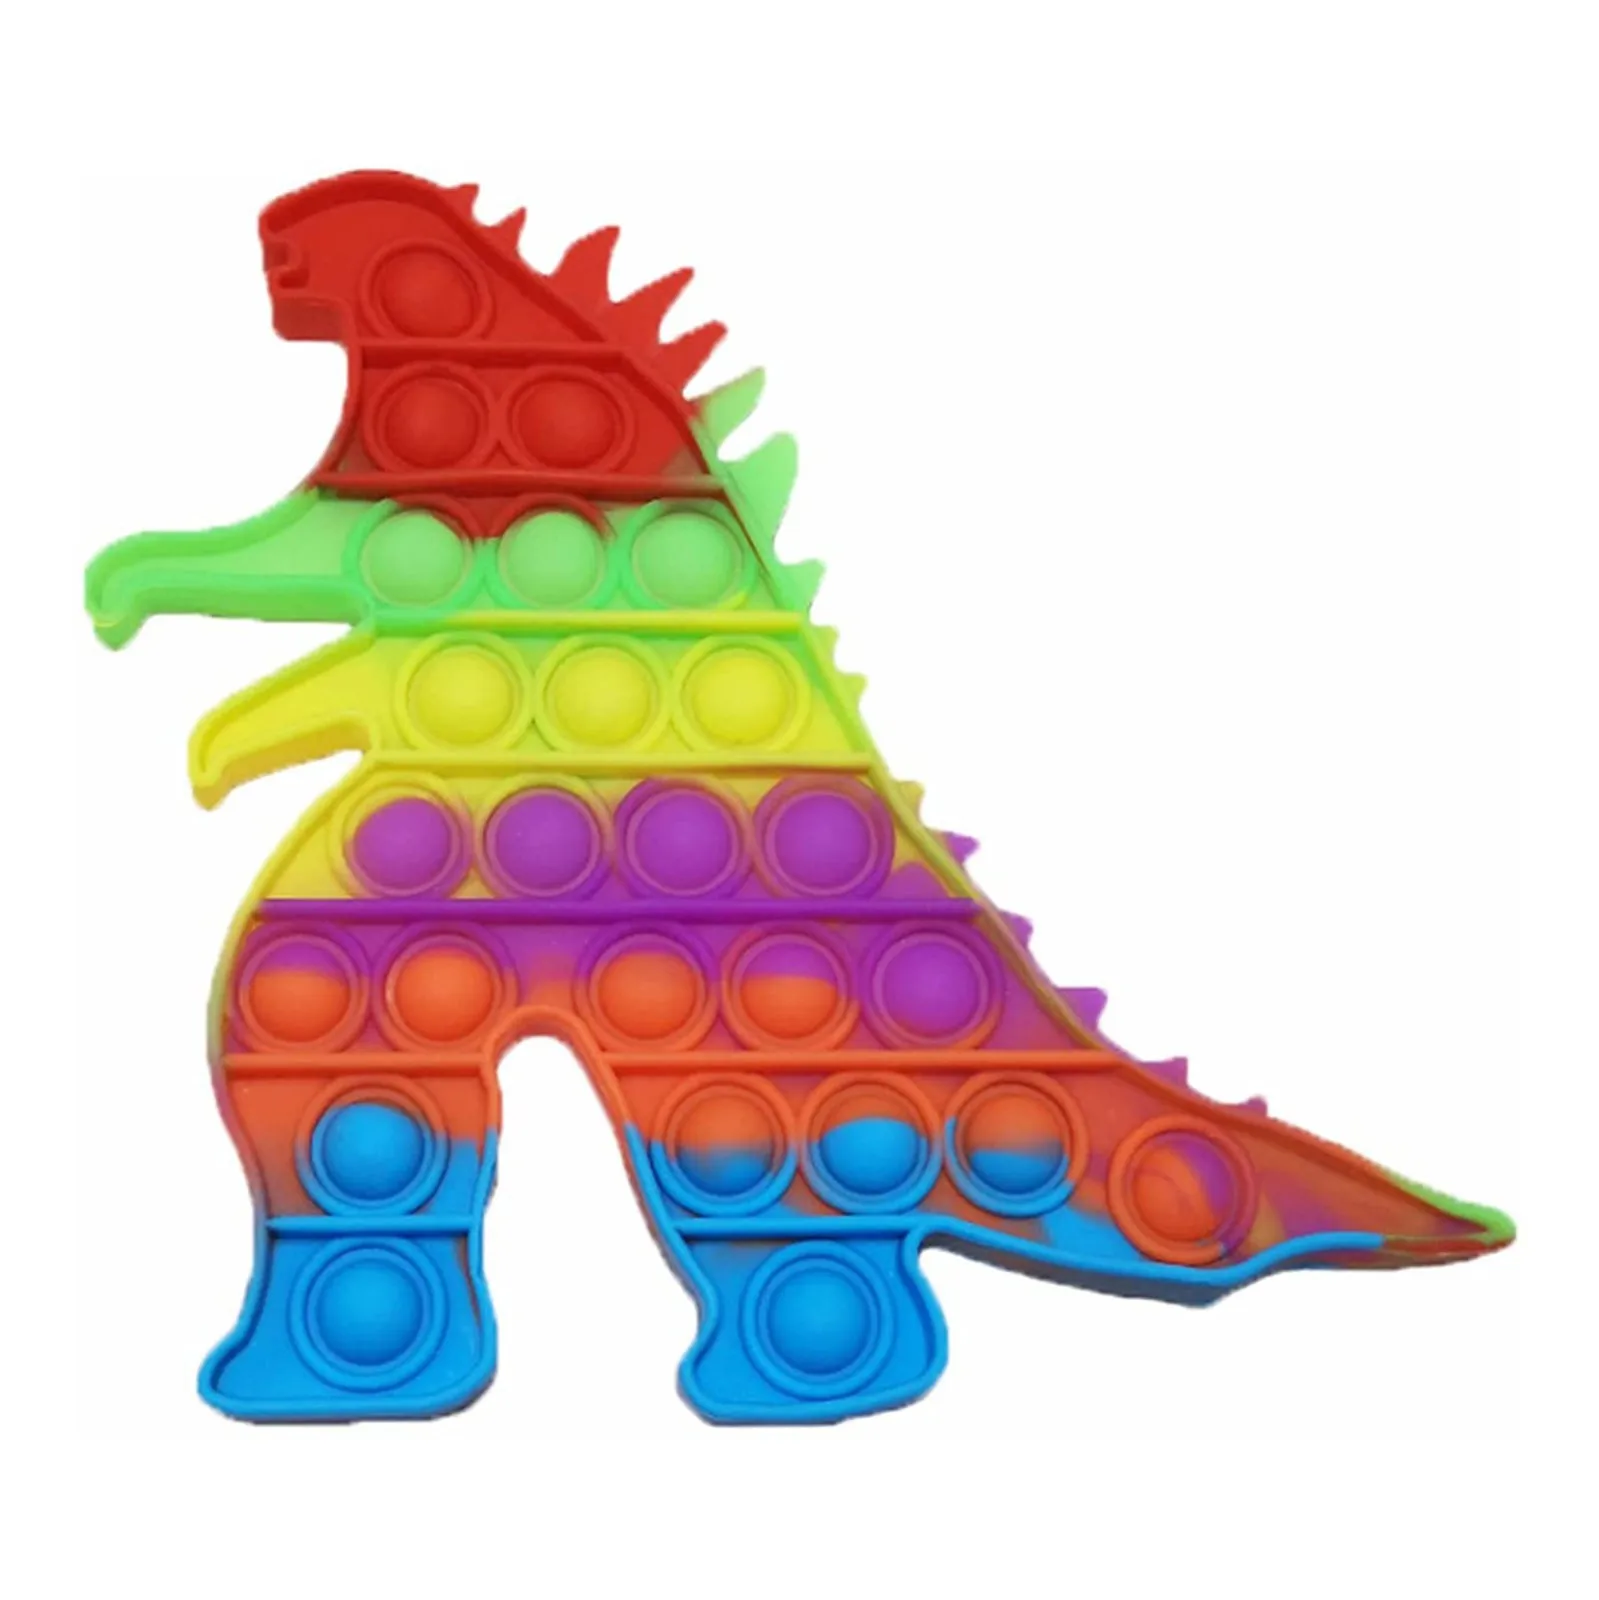 

Светящийся динозавр Fidget It Toys животный пуш-пузырь сенсорная игрушка для аутизма игрушки для снятия стресса для взрослых детей антистресс ...